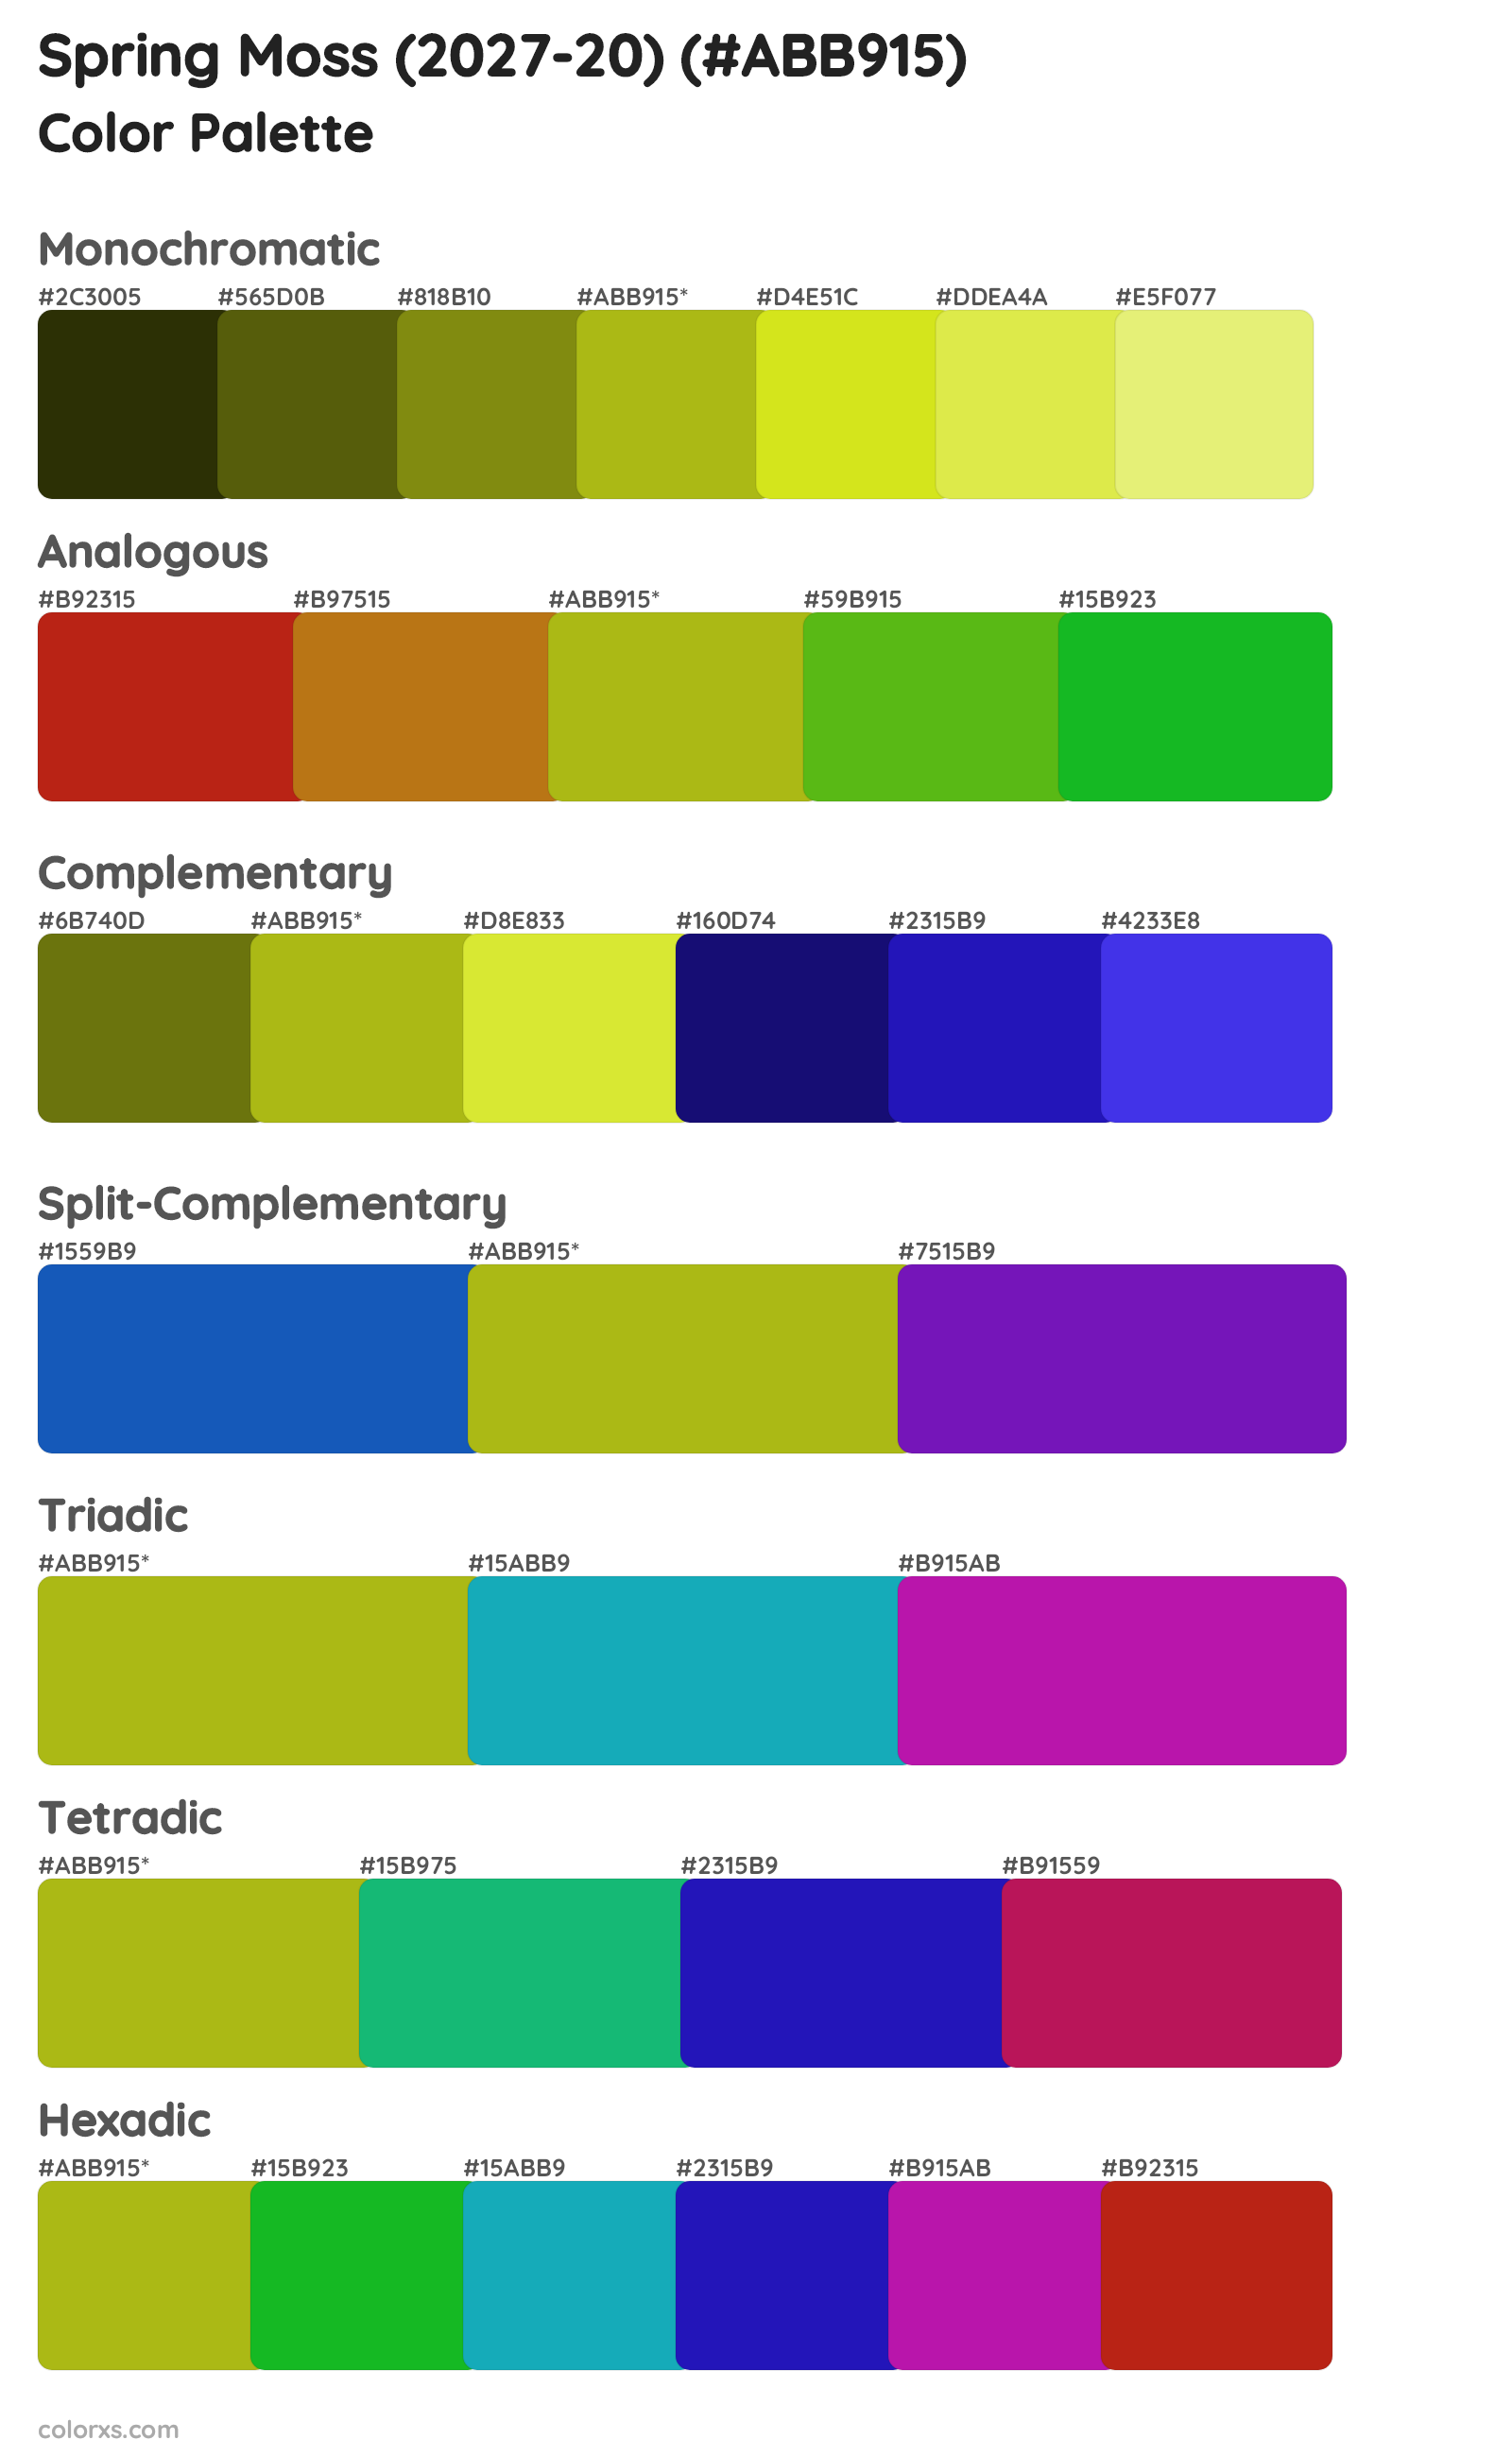 Spring Moss (2027-20) Color Scheme Palettes